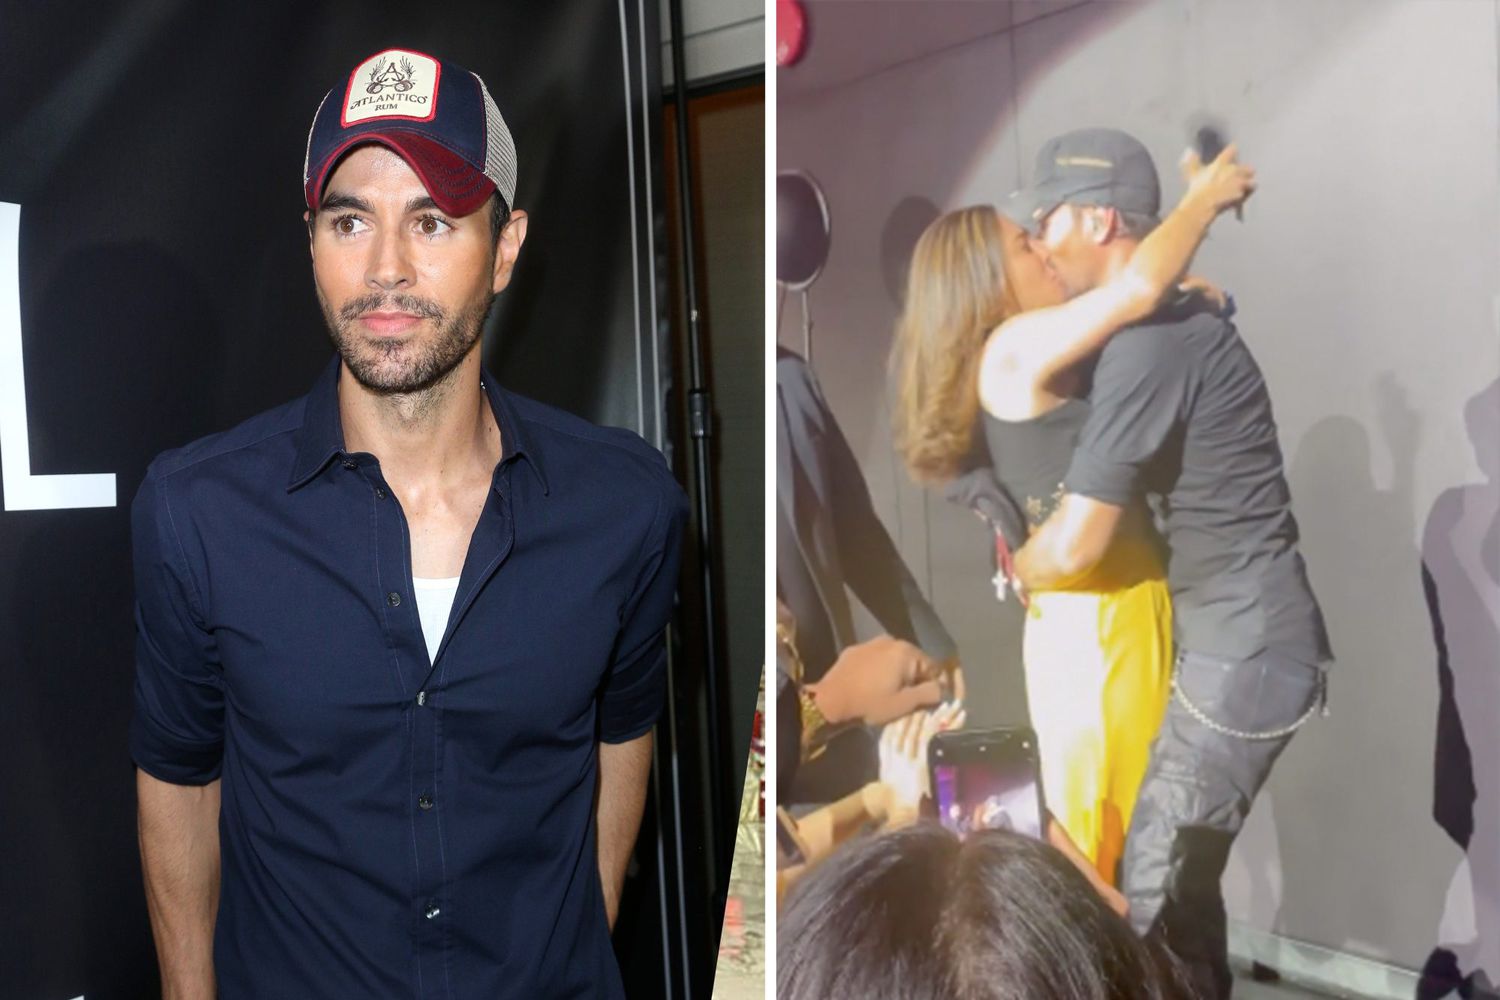 Fan se come a besos en la boca a Enrique Iglesias durante concierto y su reacción es criticada